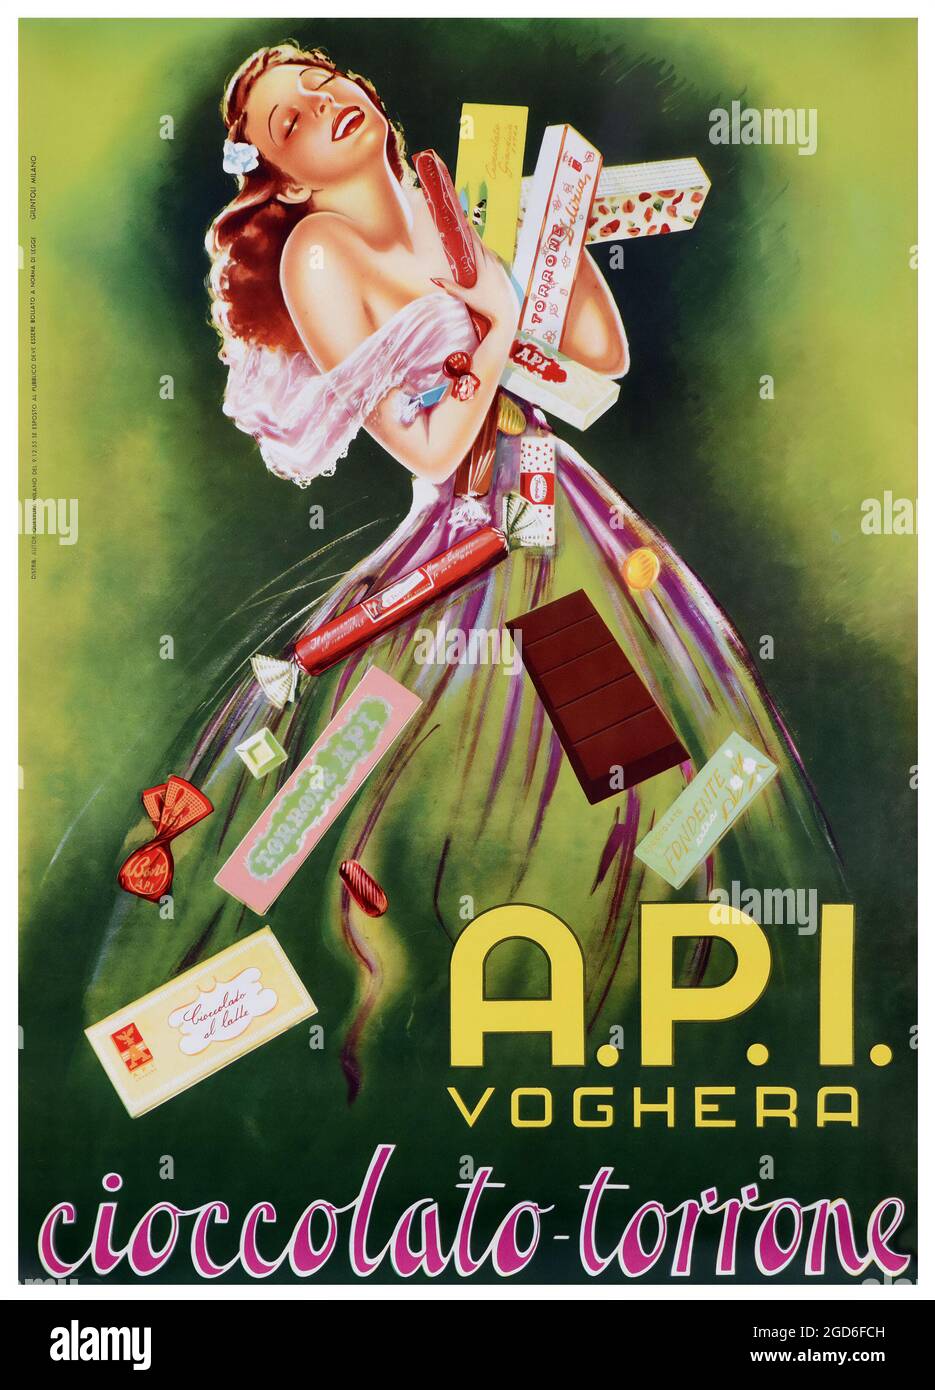 Alte und alte Werbung. A.P.I. Voghera, 'cioccolato-torrone'. Werbeplakat mit Schokolade. 1955. Künstler unbekannt. Stockfoto